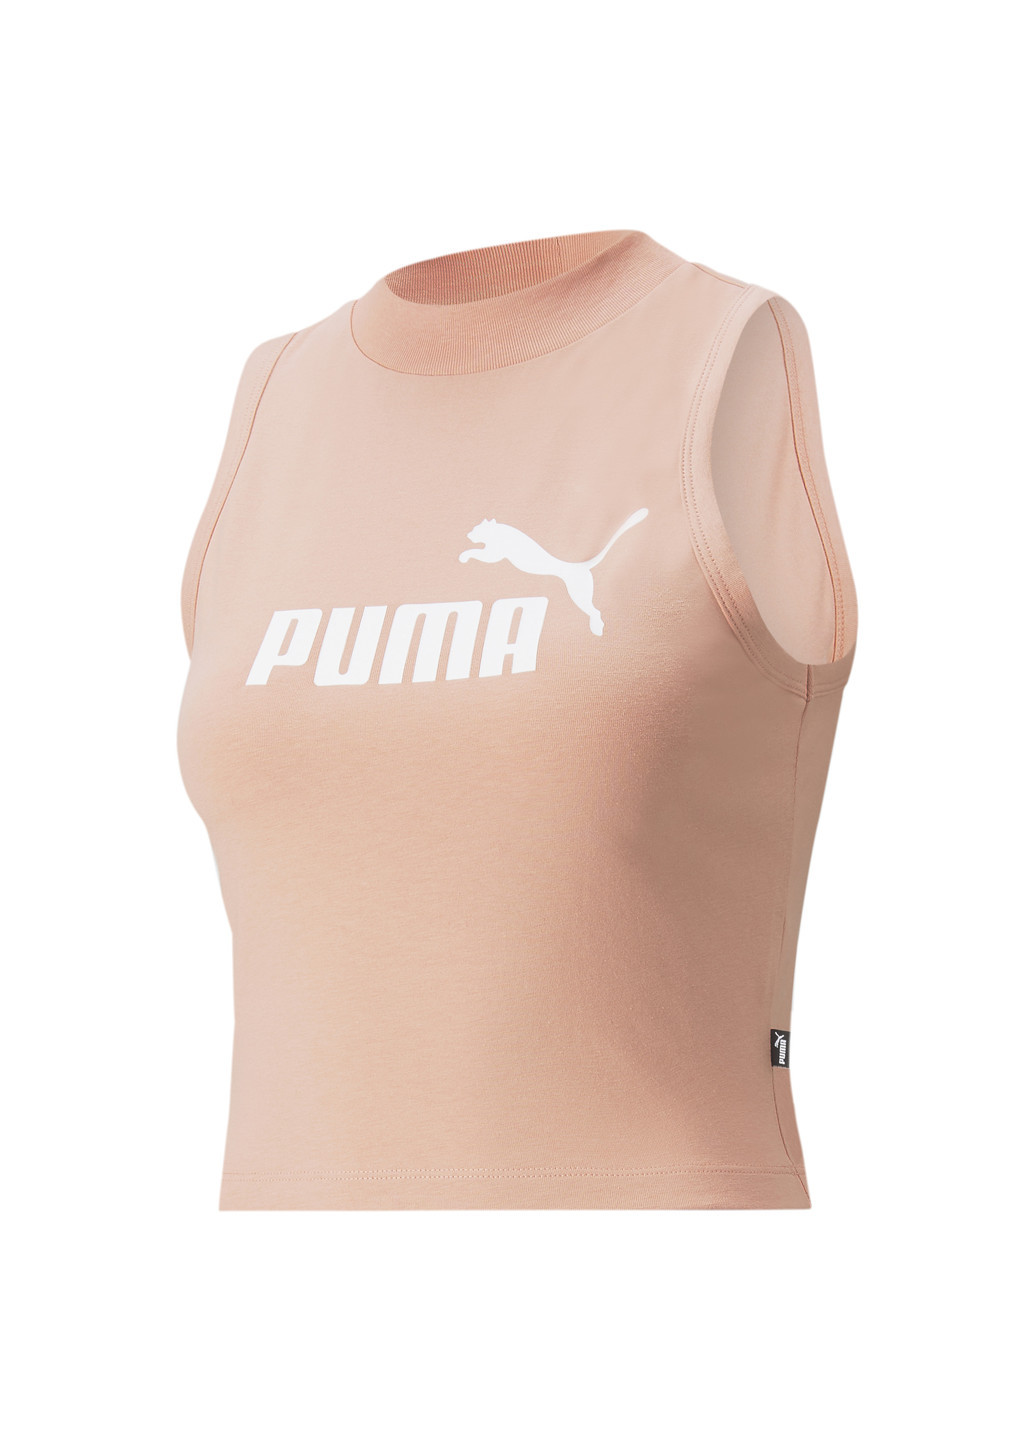 Майка Essentials High Neck Women's Tank Top Puma однотонный розовый спортивный хлопок, полиэстер, эластан